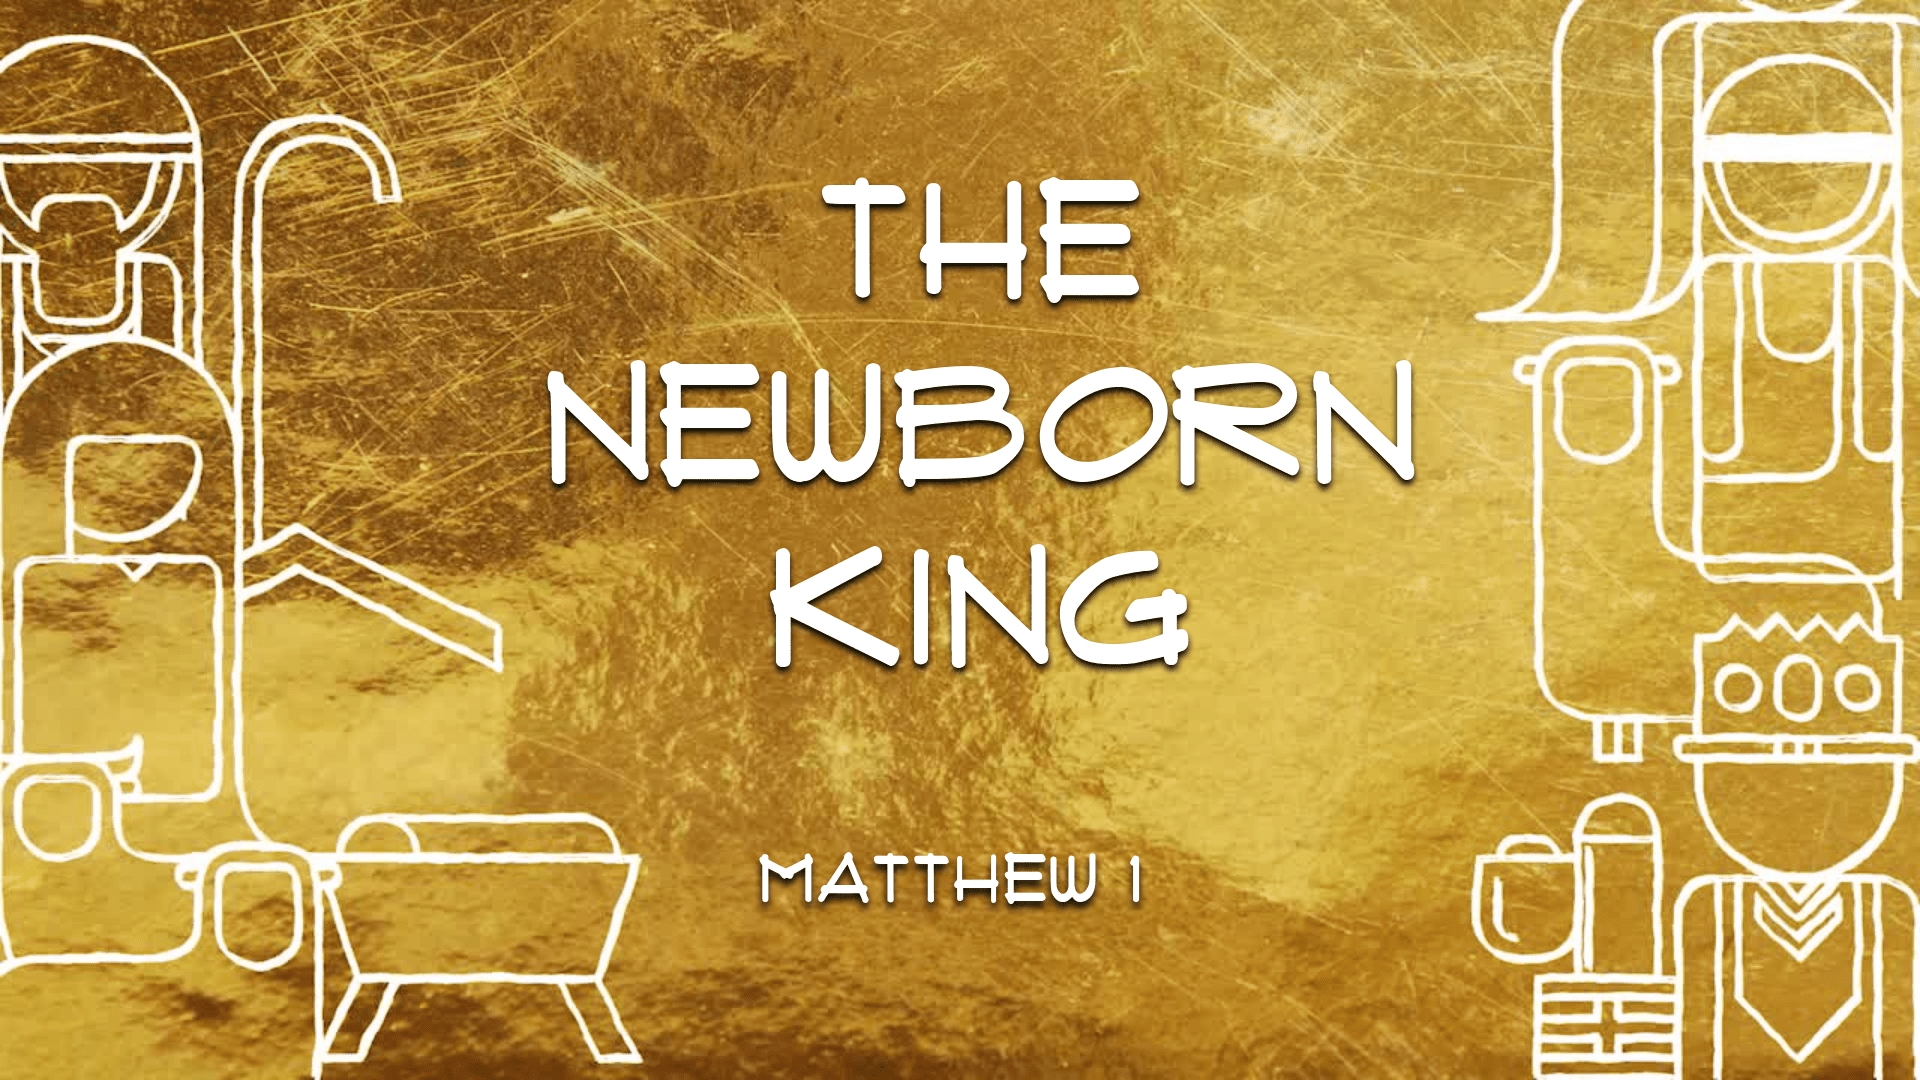 The Newborn King